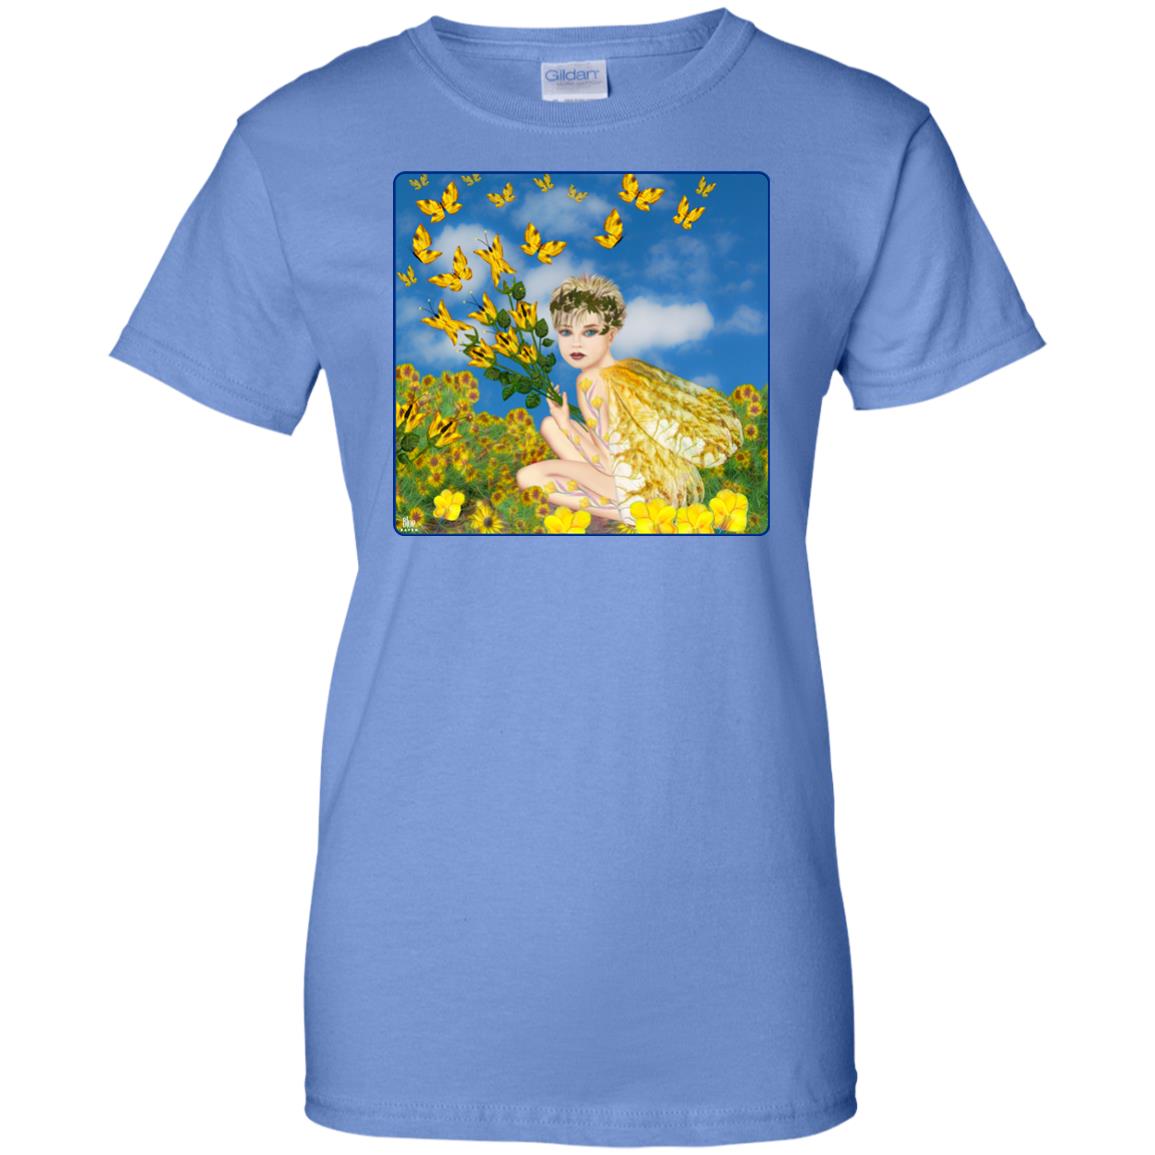 MAKING BUTTERFLIES - Women's Relaxed Fit T-Shirt